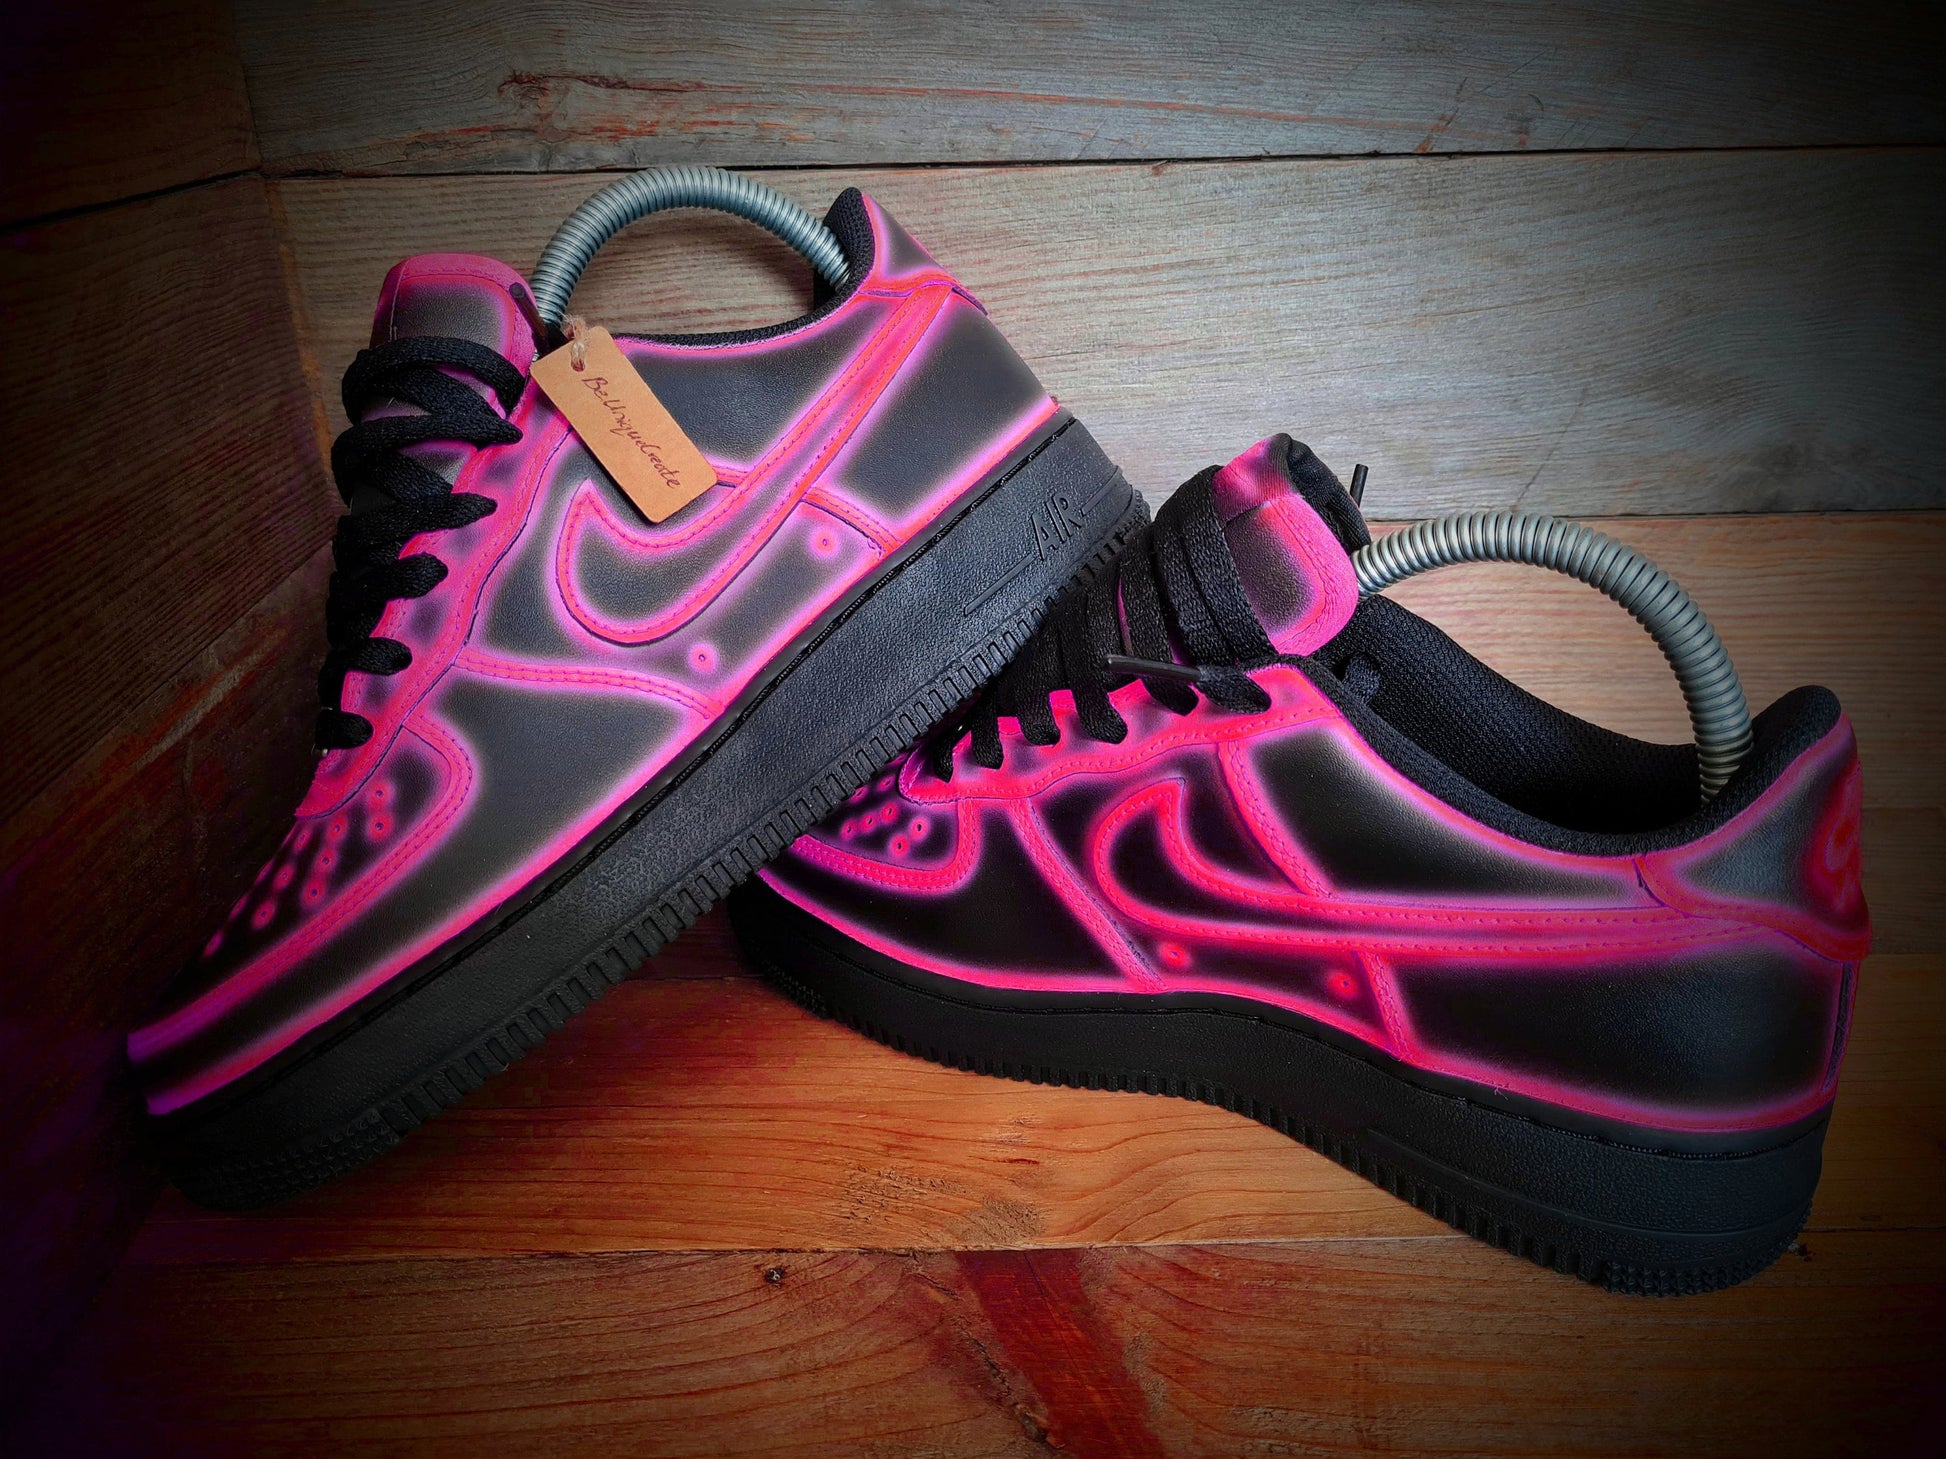 Custom Air Force 1/AF1/Sneakers/Shoes/Kicks/Premium/Personalised/Neon Pink Cartoon